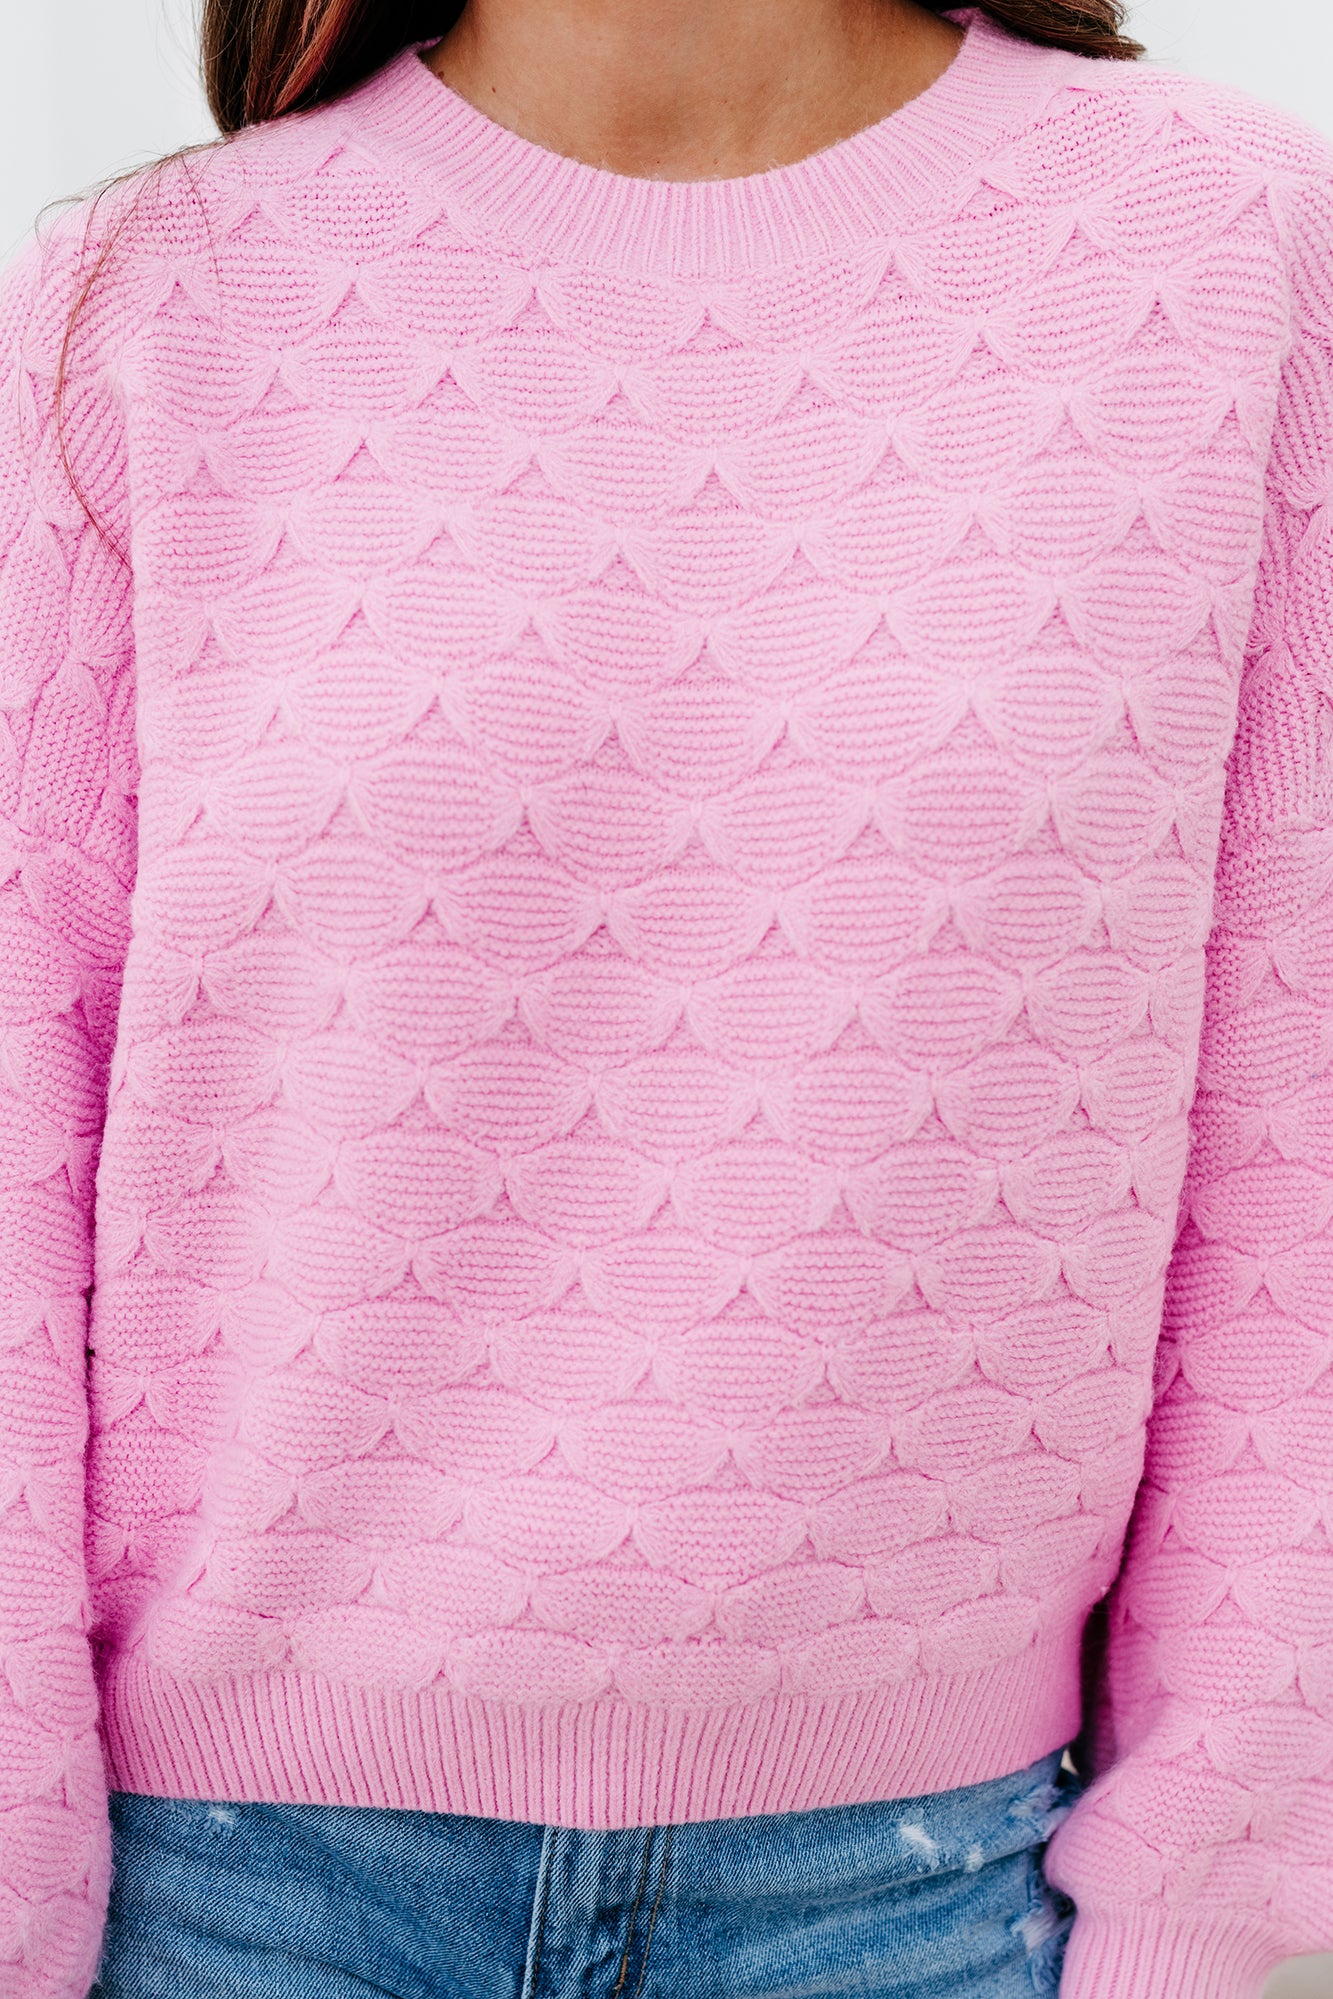 Peculiar Personality Shell Patterned Sweater (Pink) - NanaMacs